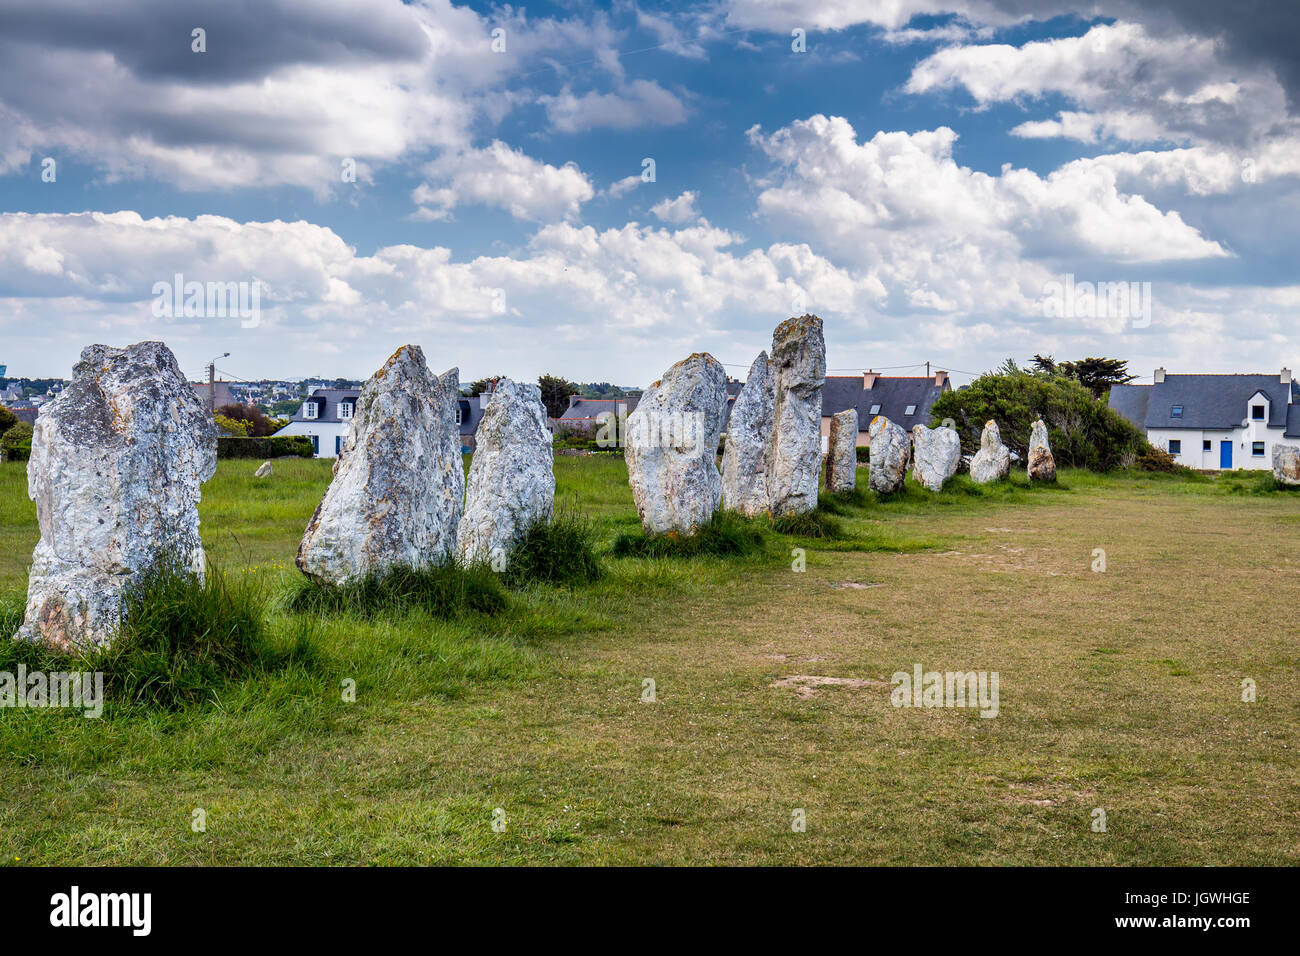 L'allineamento delle pietre permanente noto come allineamento de menhir de Lagatjar nel neighborhoodl di Camaret-sur-Mer è un imperdibile sito preistorico Foto Stock